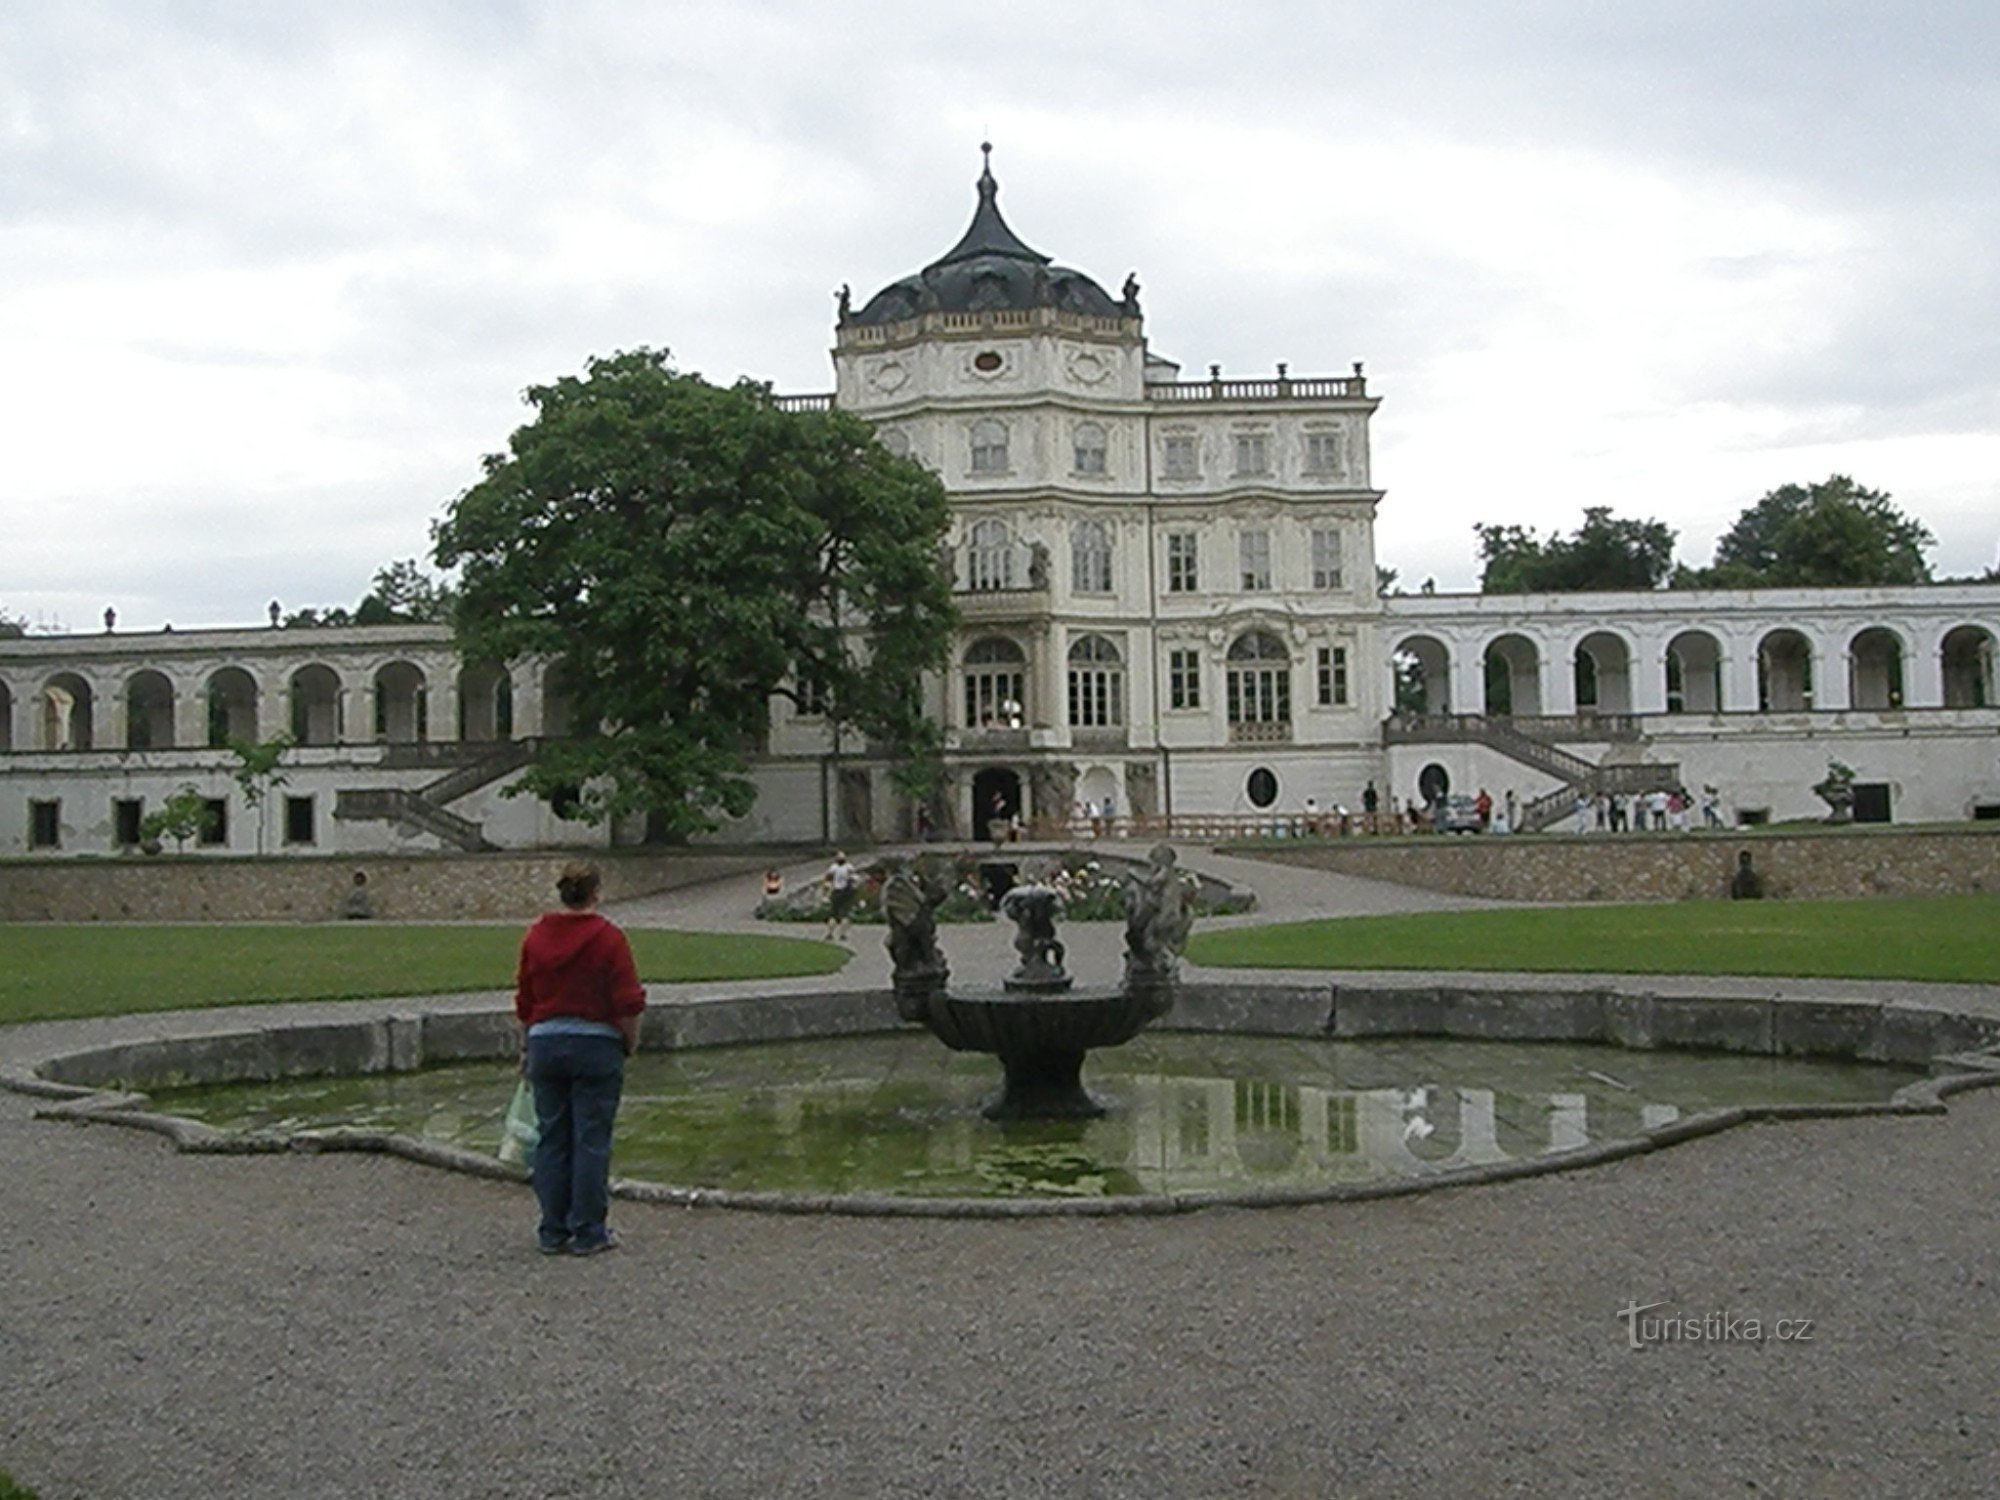 Castelul baroc local, cu piscinele și iazul său, amintește poate puțin de un mic Versailles